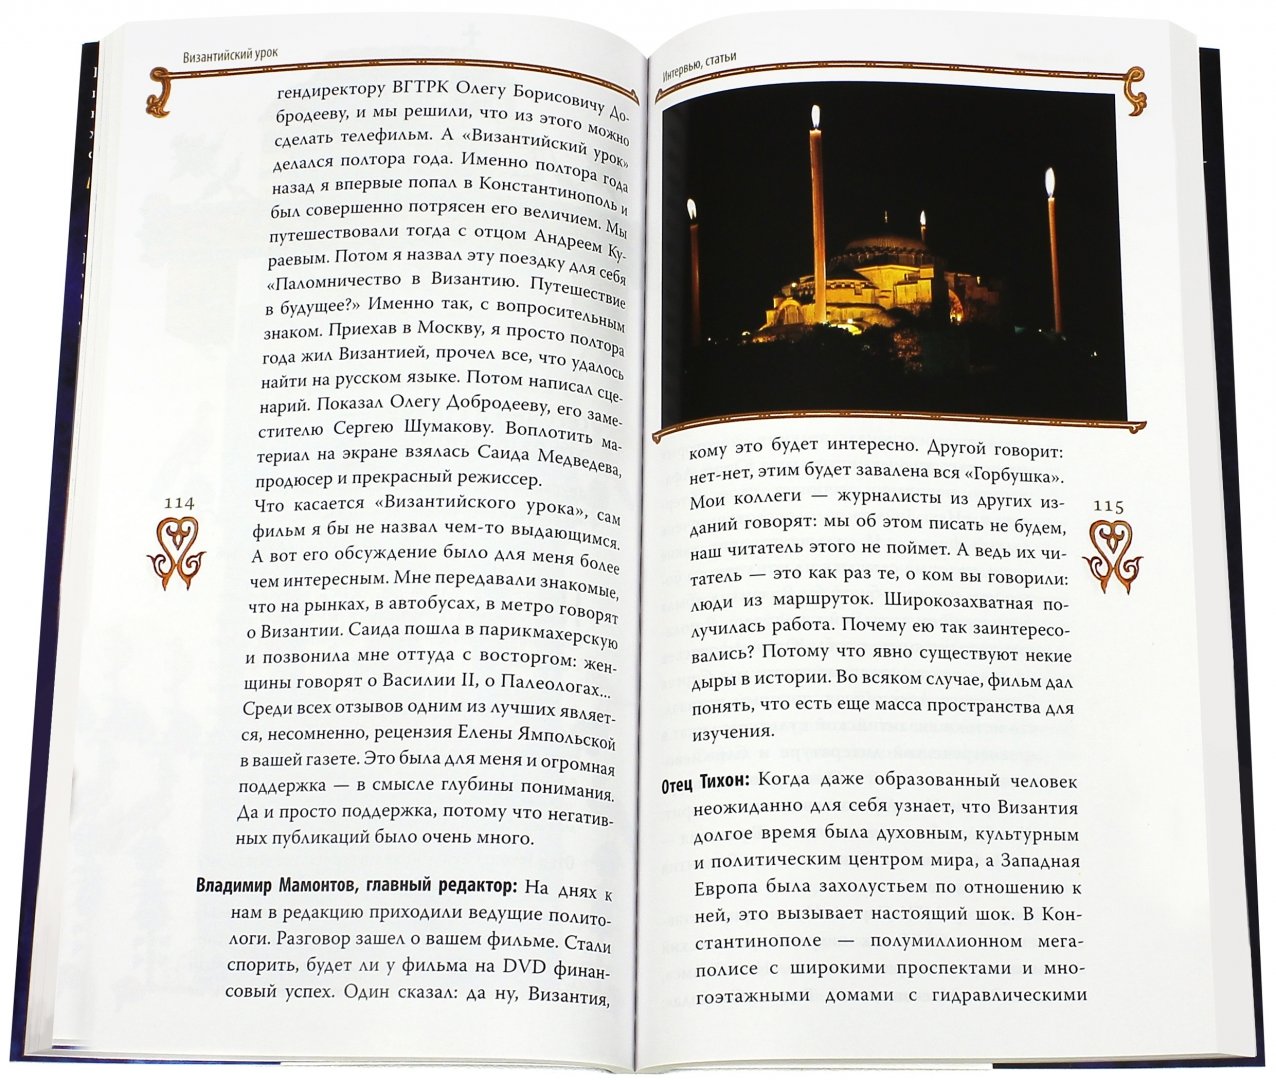 Иллюстрация 1 из 11 для Гибель империи. Византийский урок - Тихон Архимандрит | Лабиринт - книги. Источник: Лабиринт